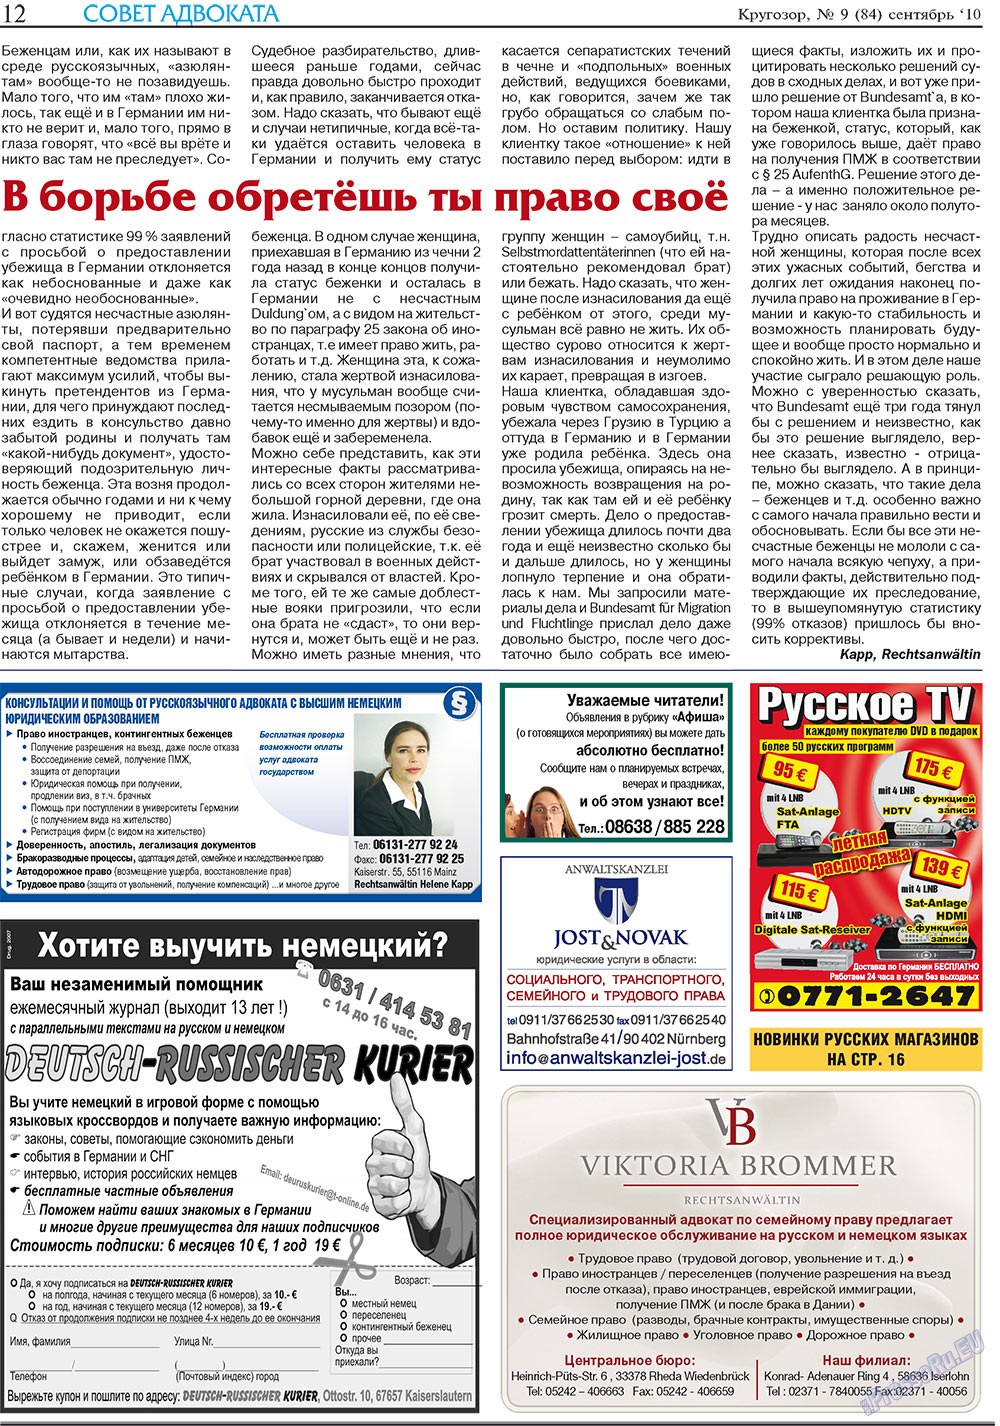 Кругозор плюс!, газета. 2010 №9 стр.12